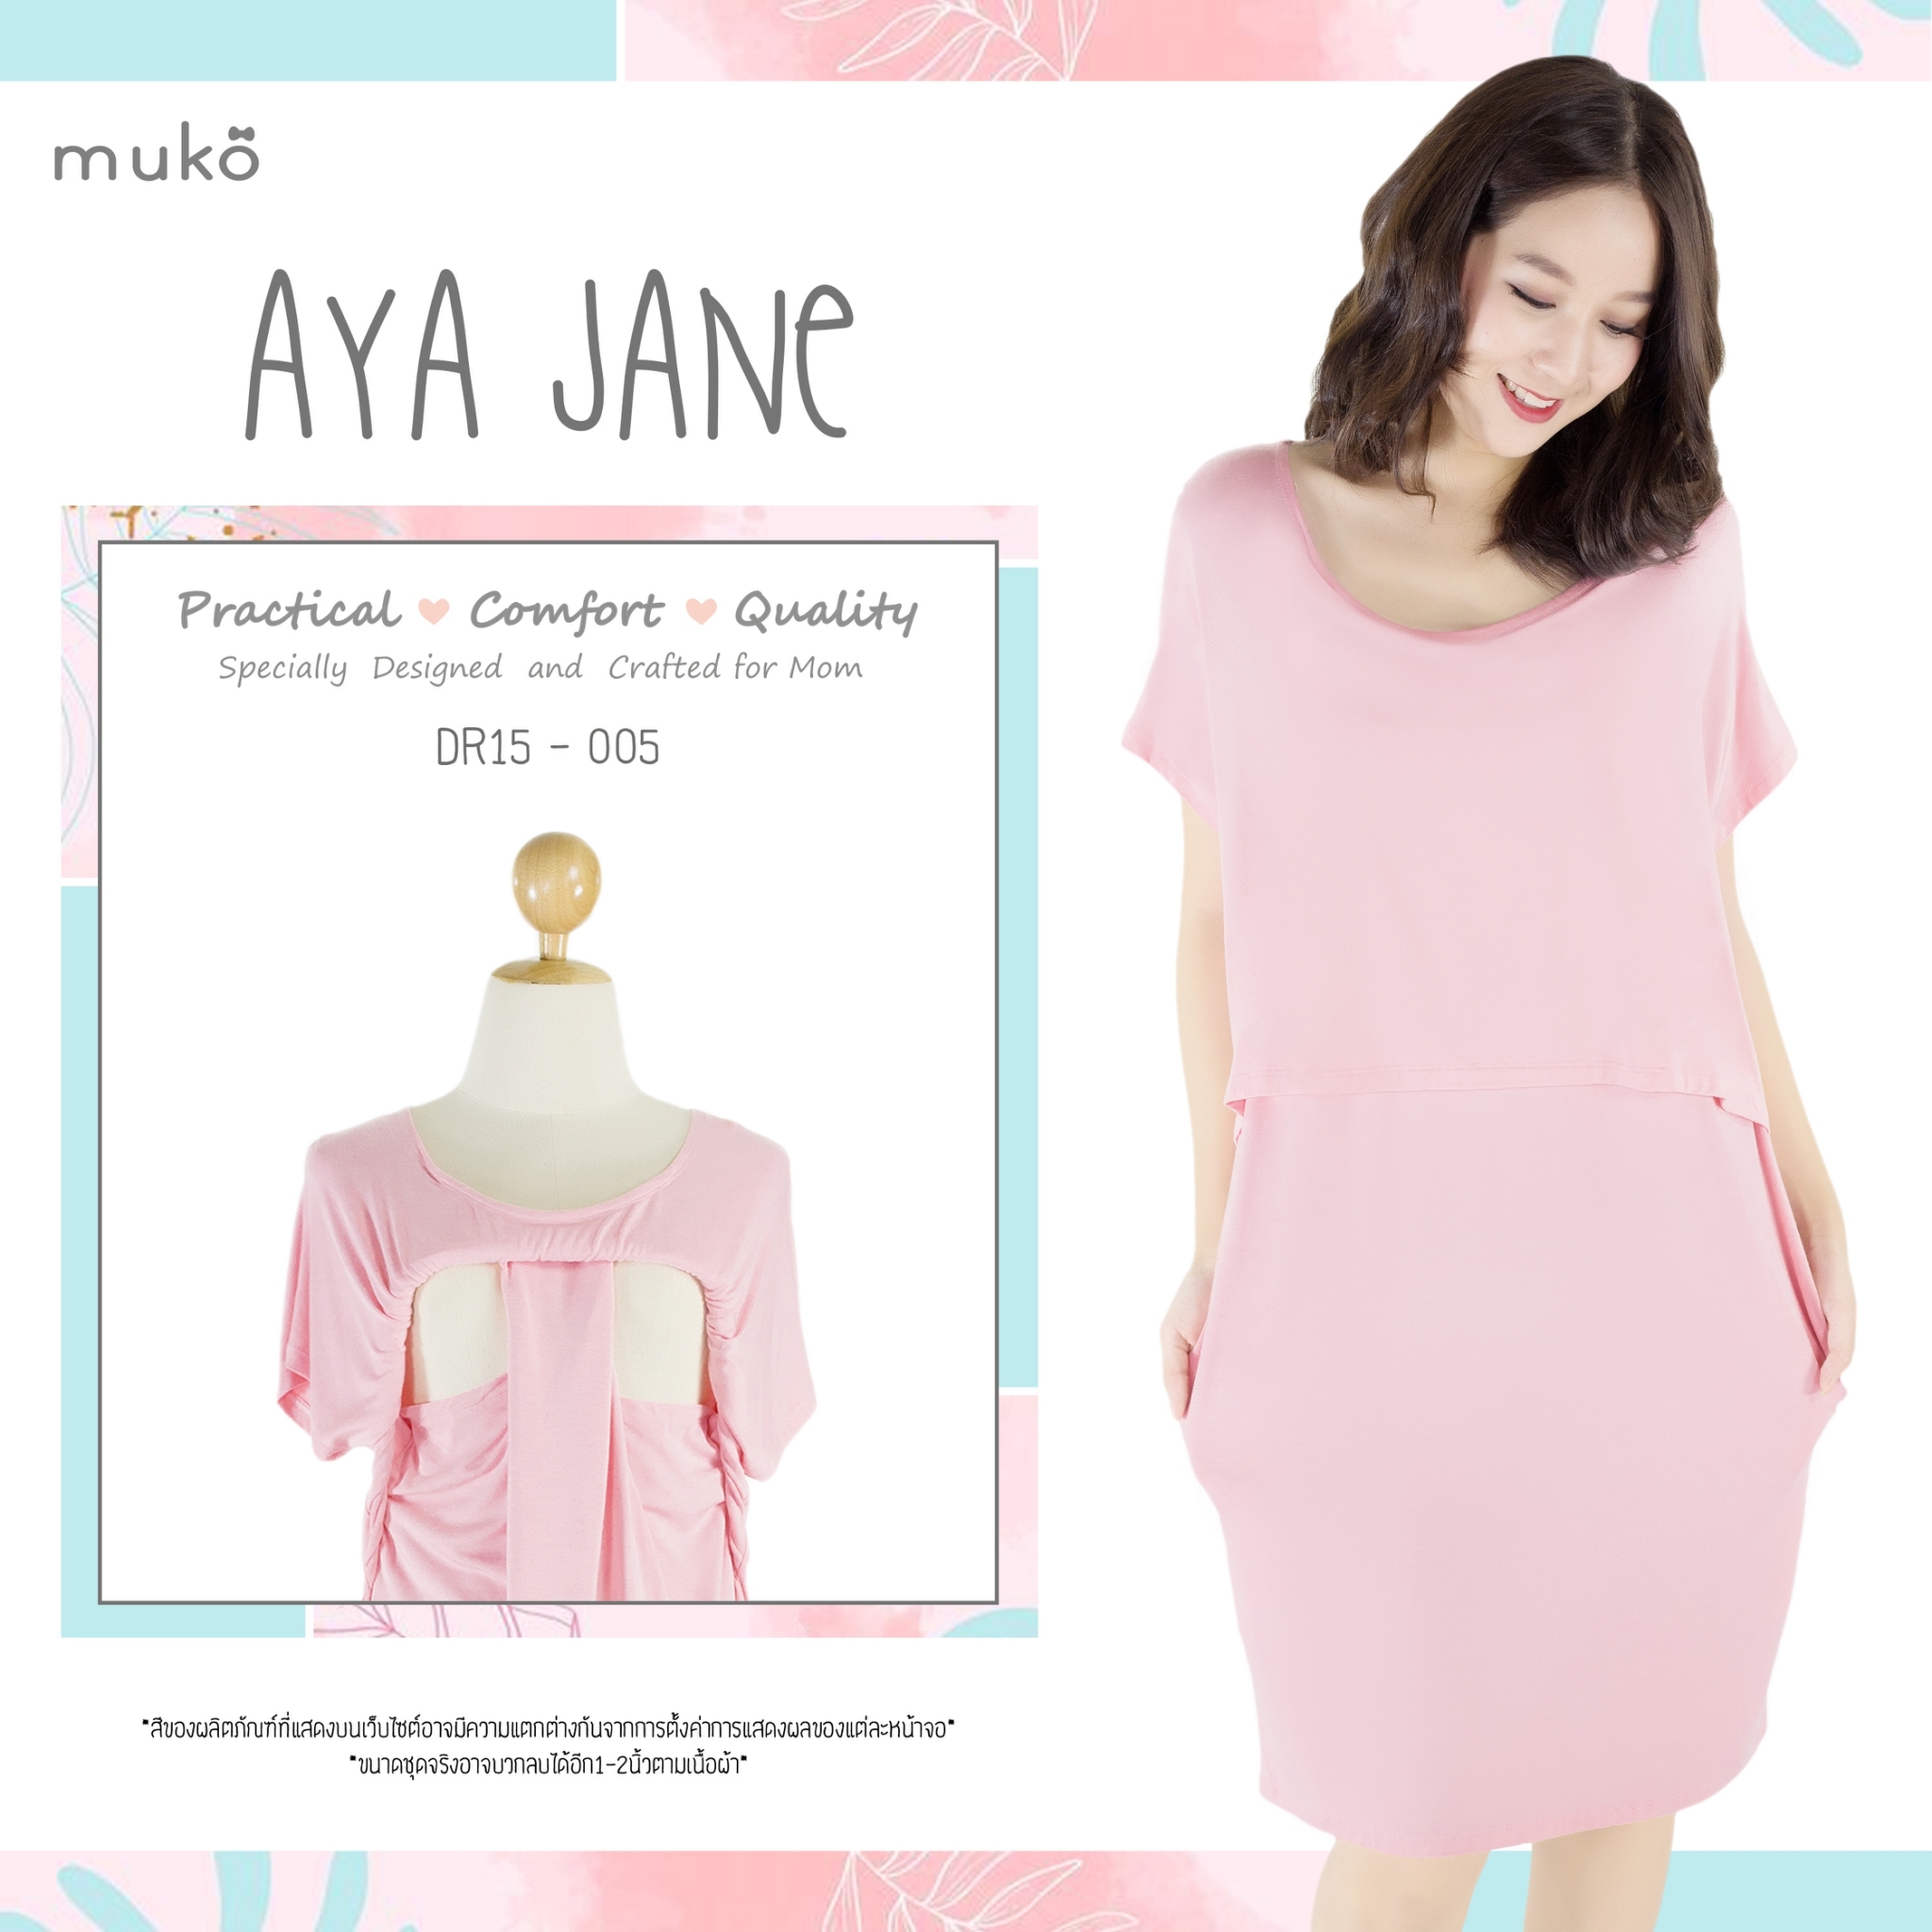 Muko AYA Jane เดรสให้นม คลุมท้อง DR15-005 สีชมพู